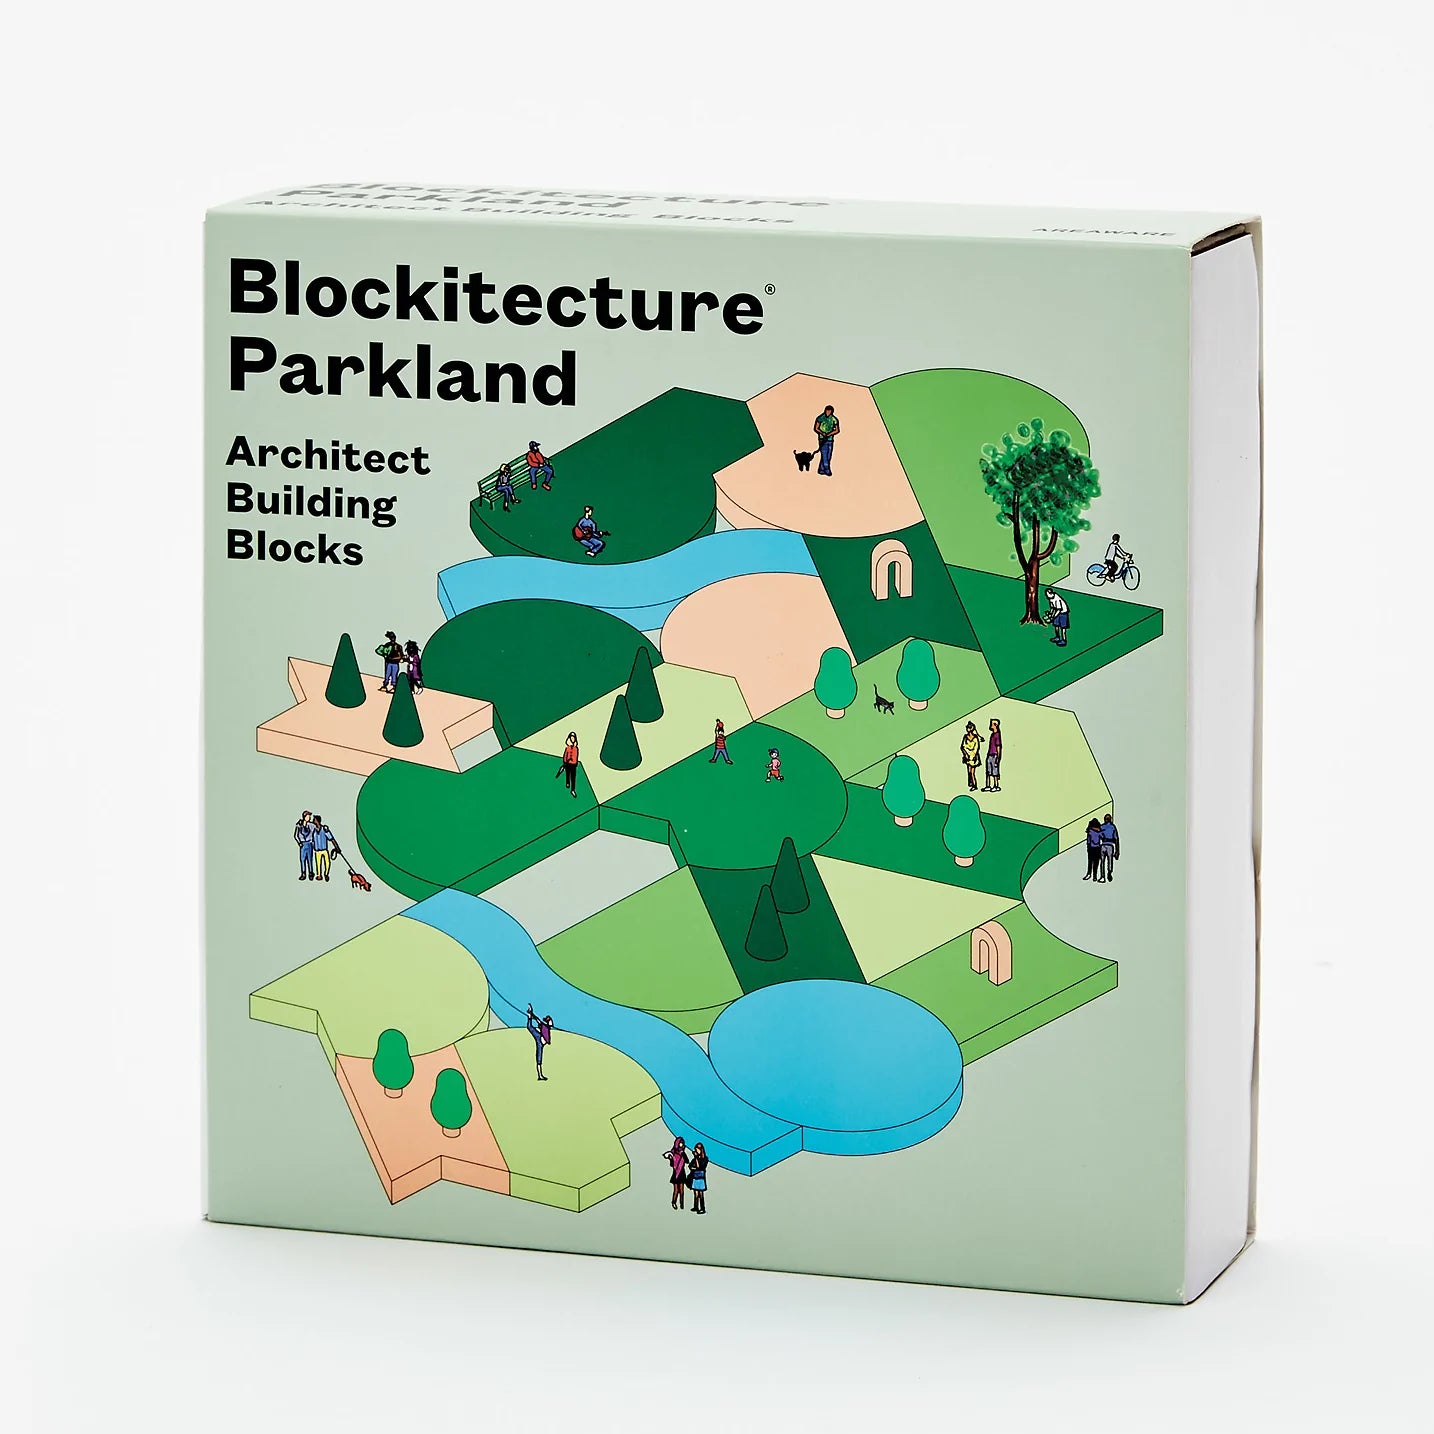 Blockitecture parkland